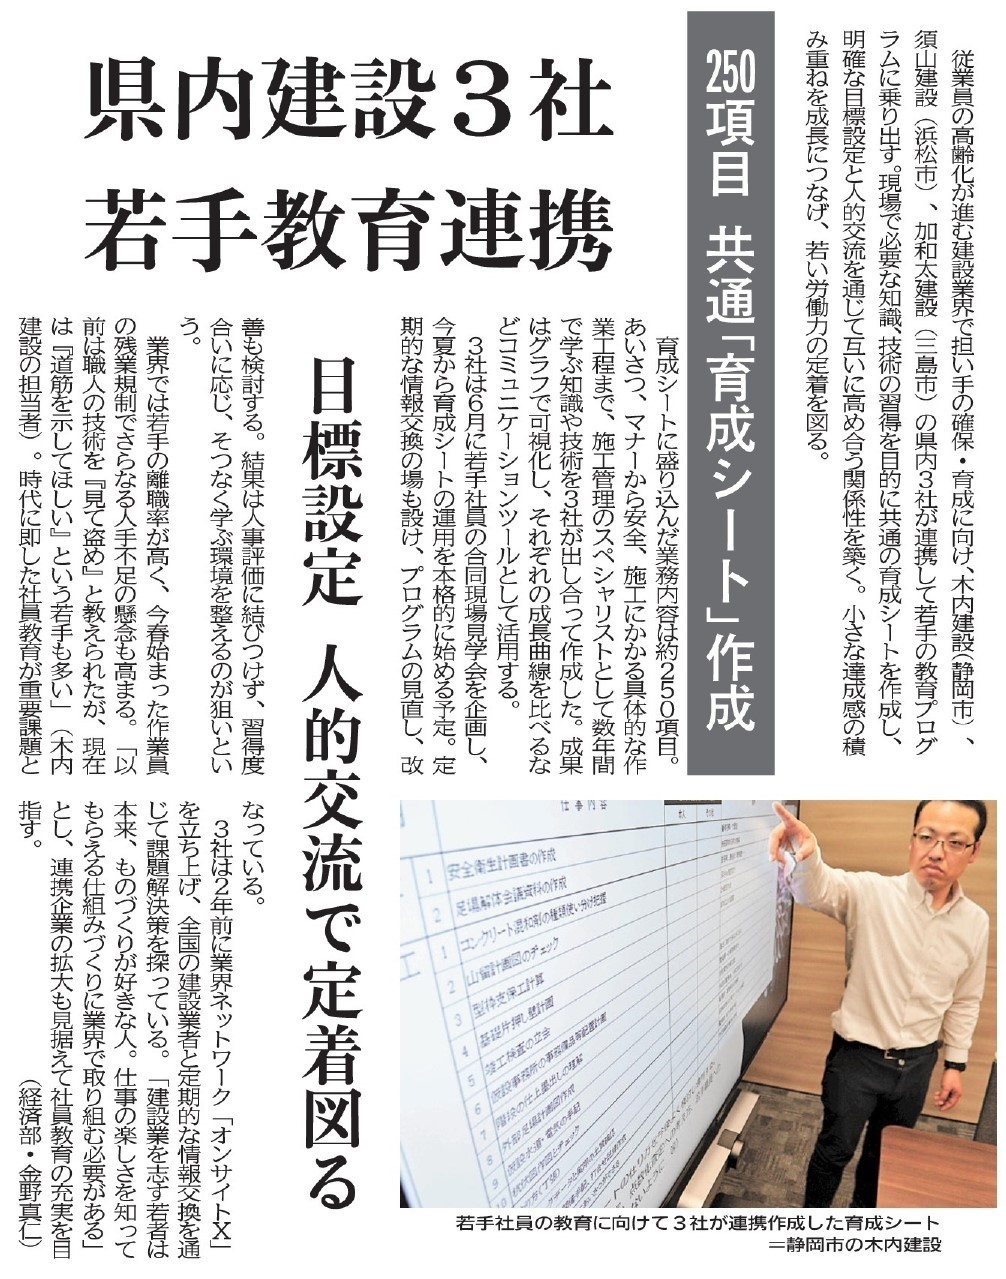 若手社員の教育に関する取り組みが静岡新聞に掲載されました